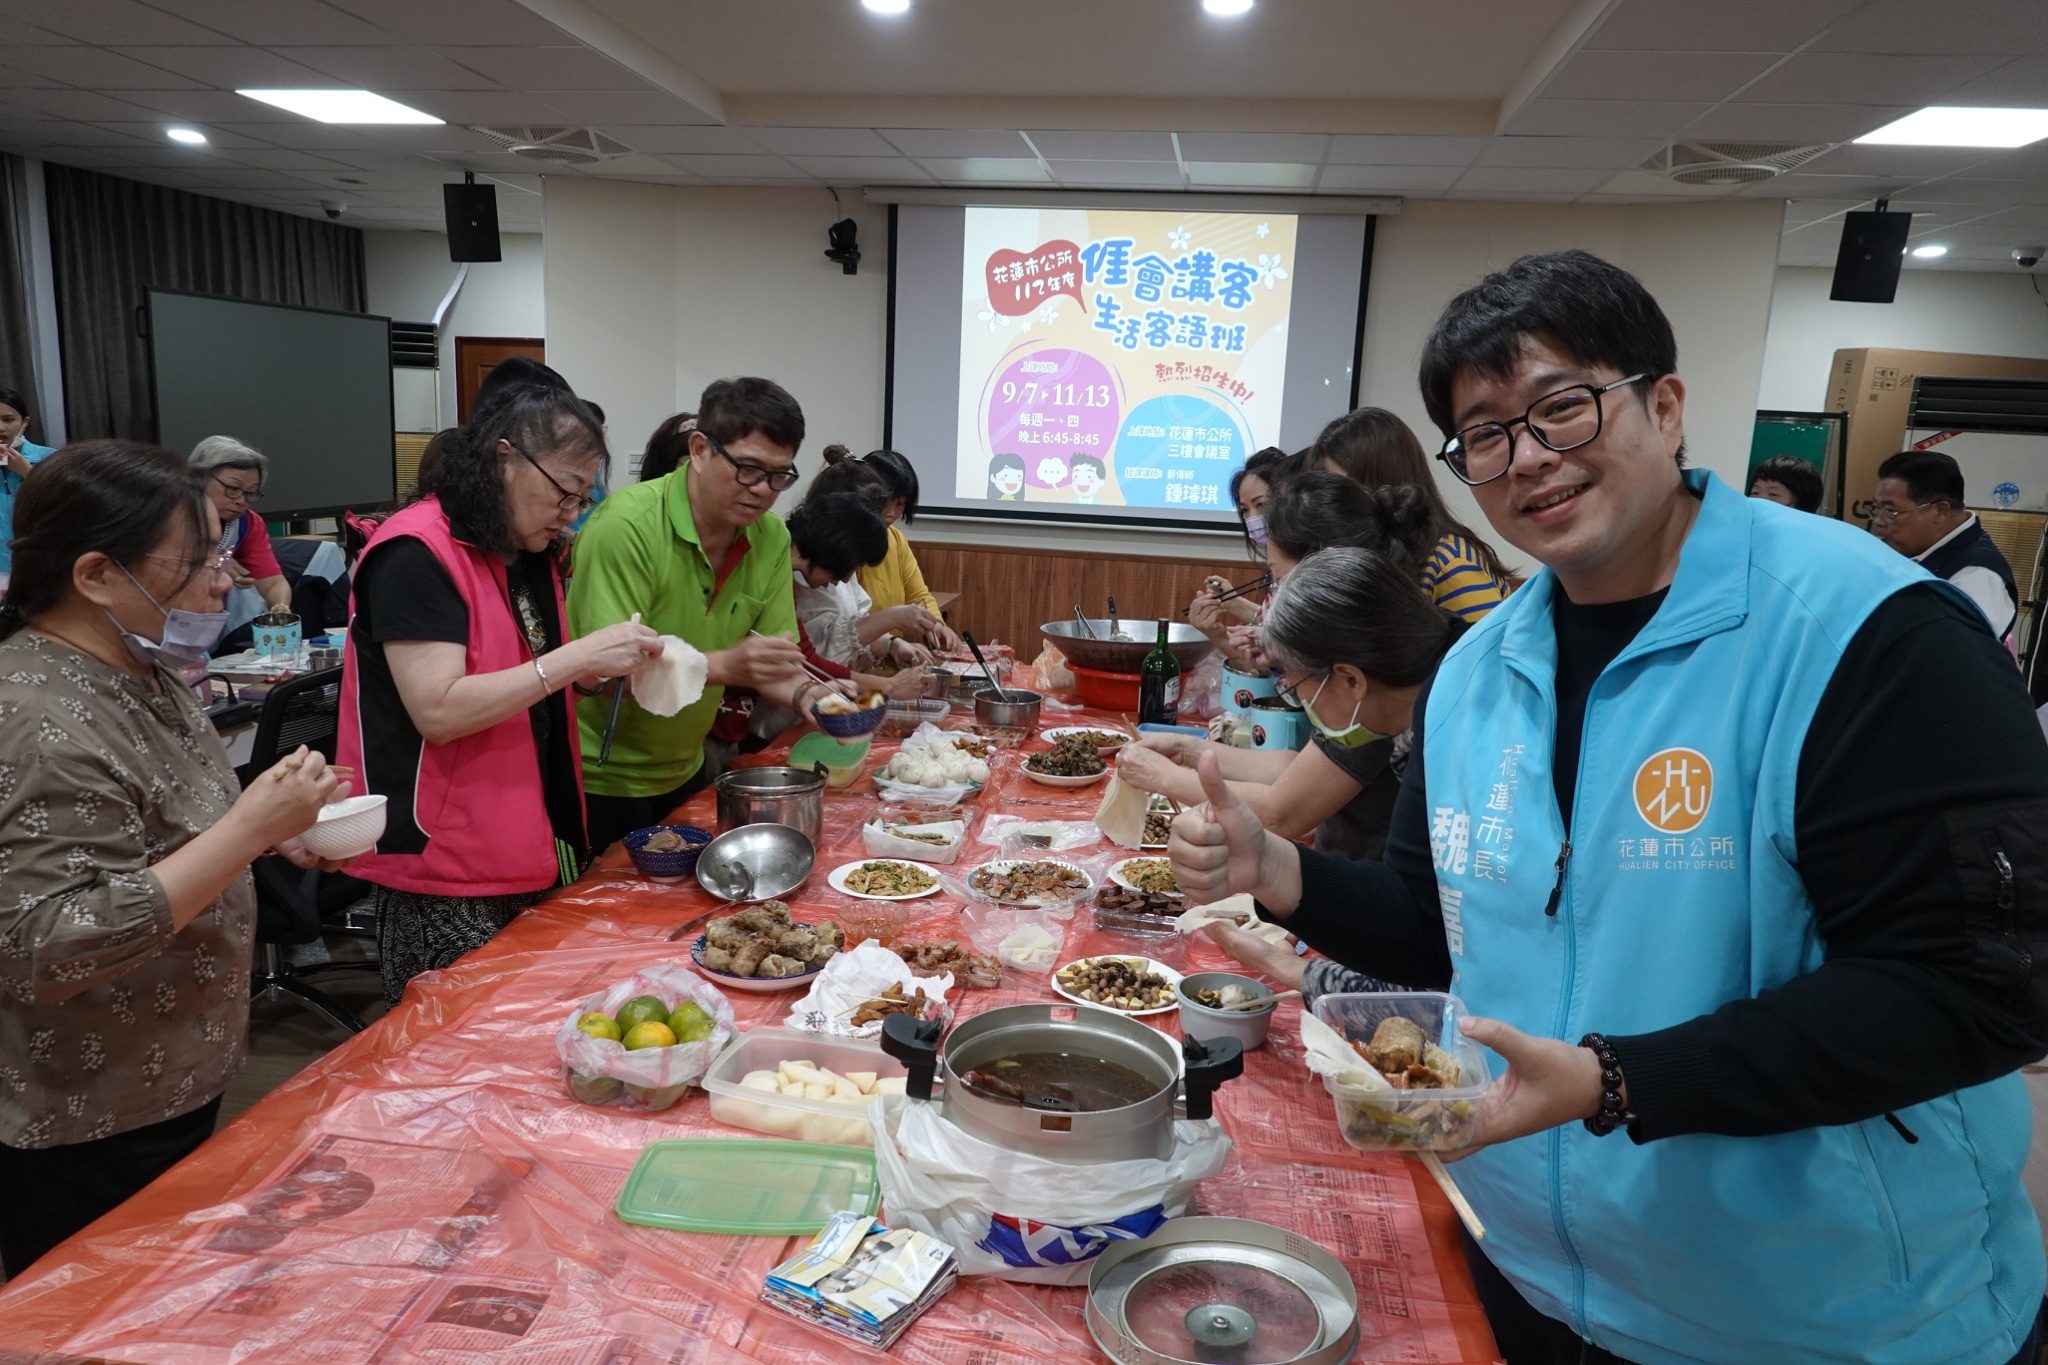 美味上菜學客語 「𠊎會講客」嗨翻天 - 早安台灣新聞 | Morning Taiwan News